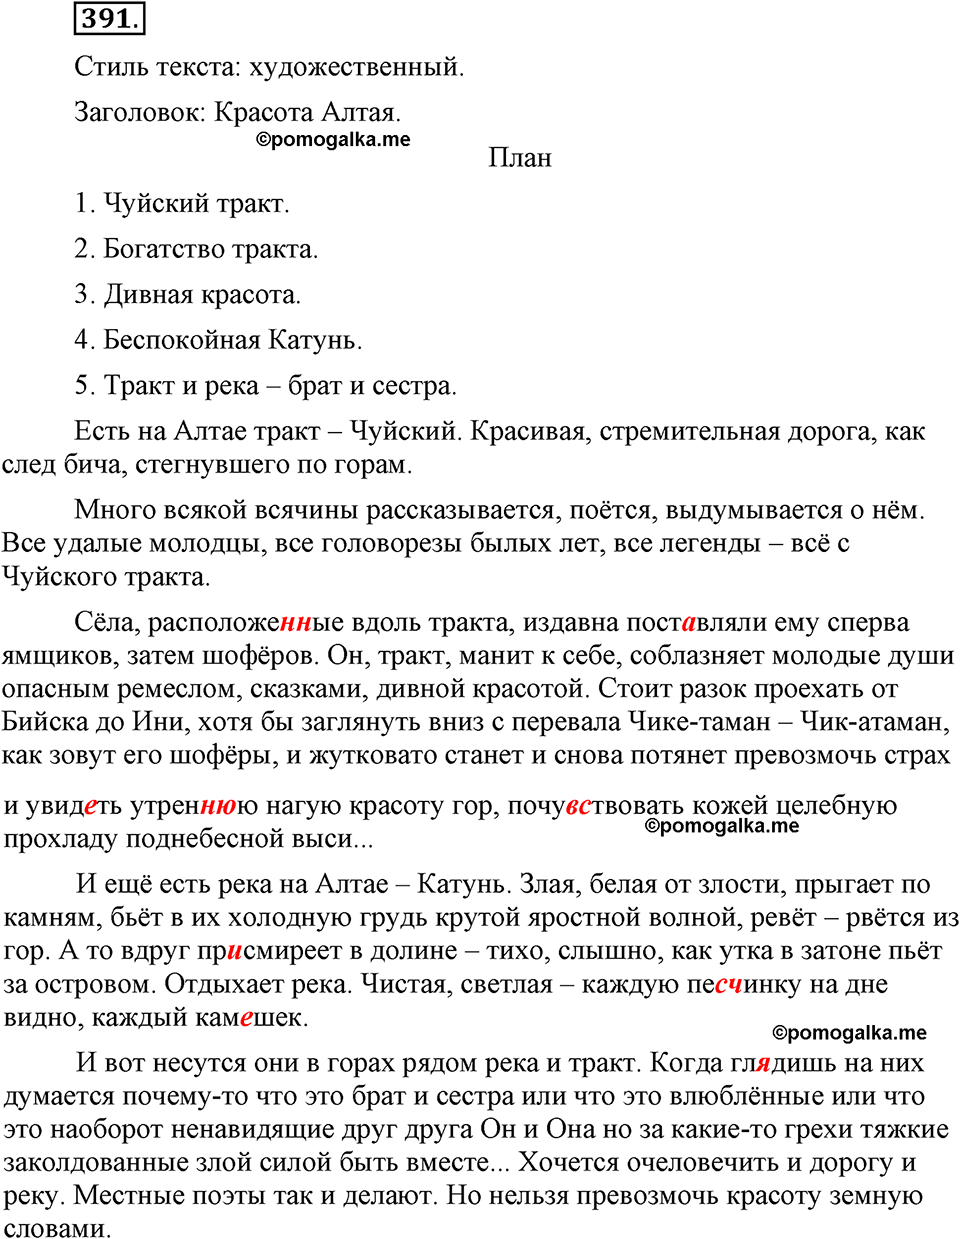 страница 176 номер 391 русский язык 9 класс Бархударов 2011 год